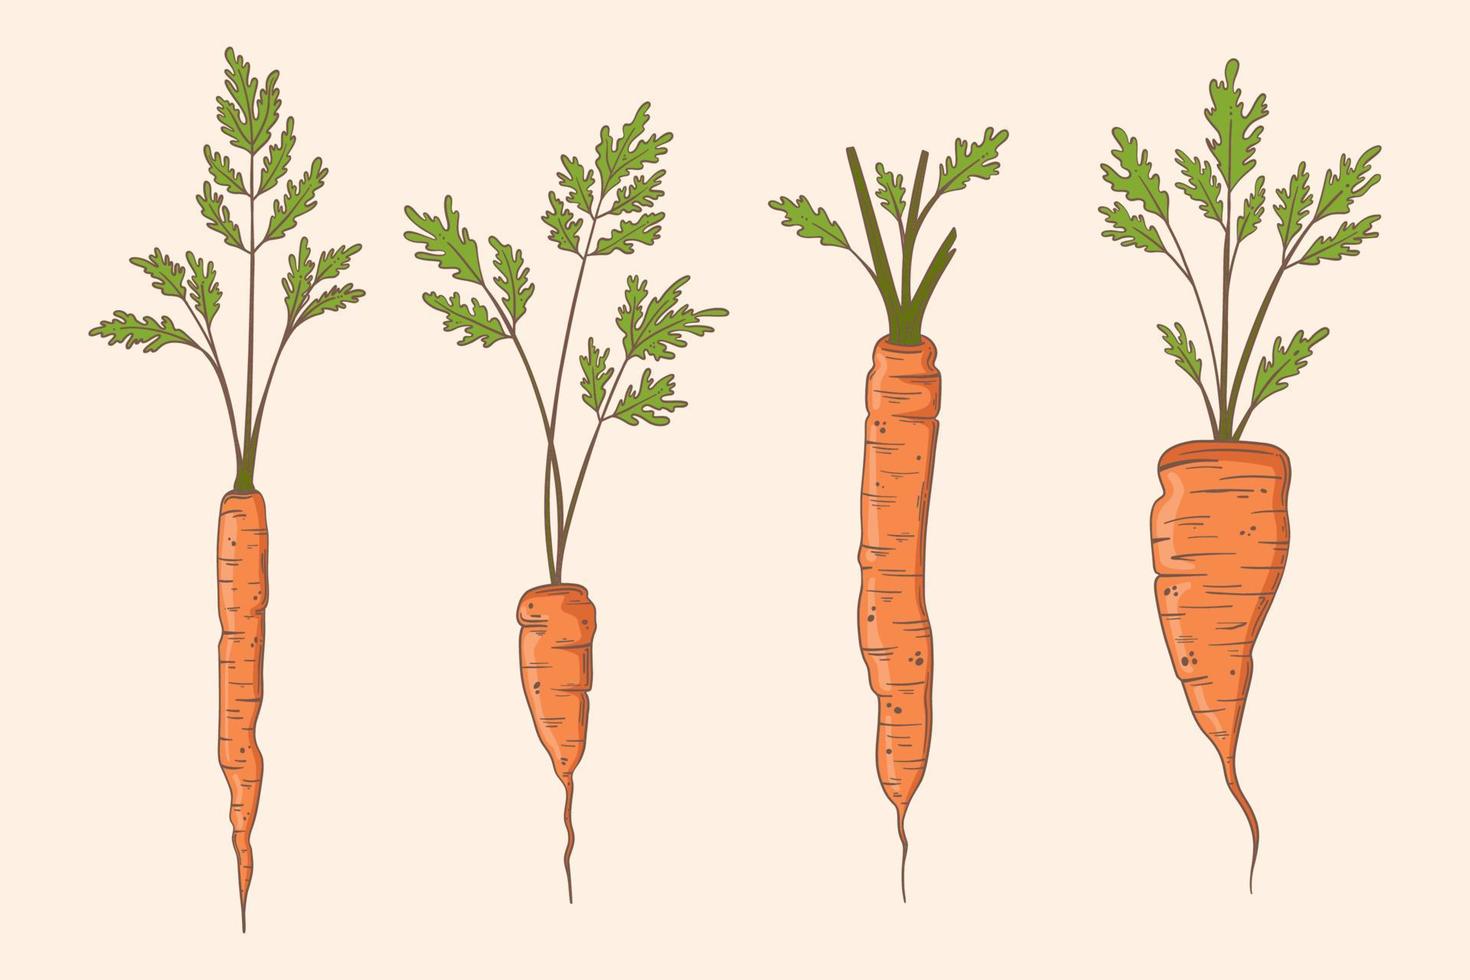 illustrazione stabilita di vettore della carota disegnata a mano. cibo vegetale biologico. carote diverse appena raccolte con le cime